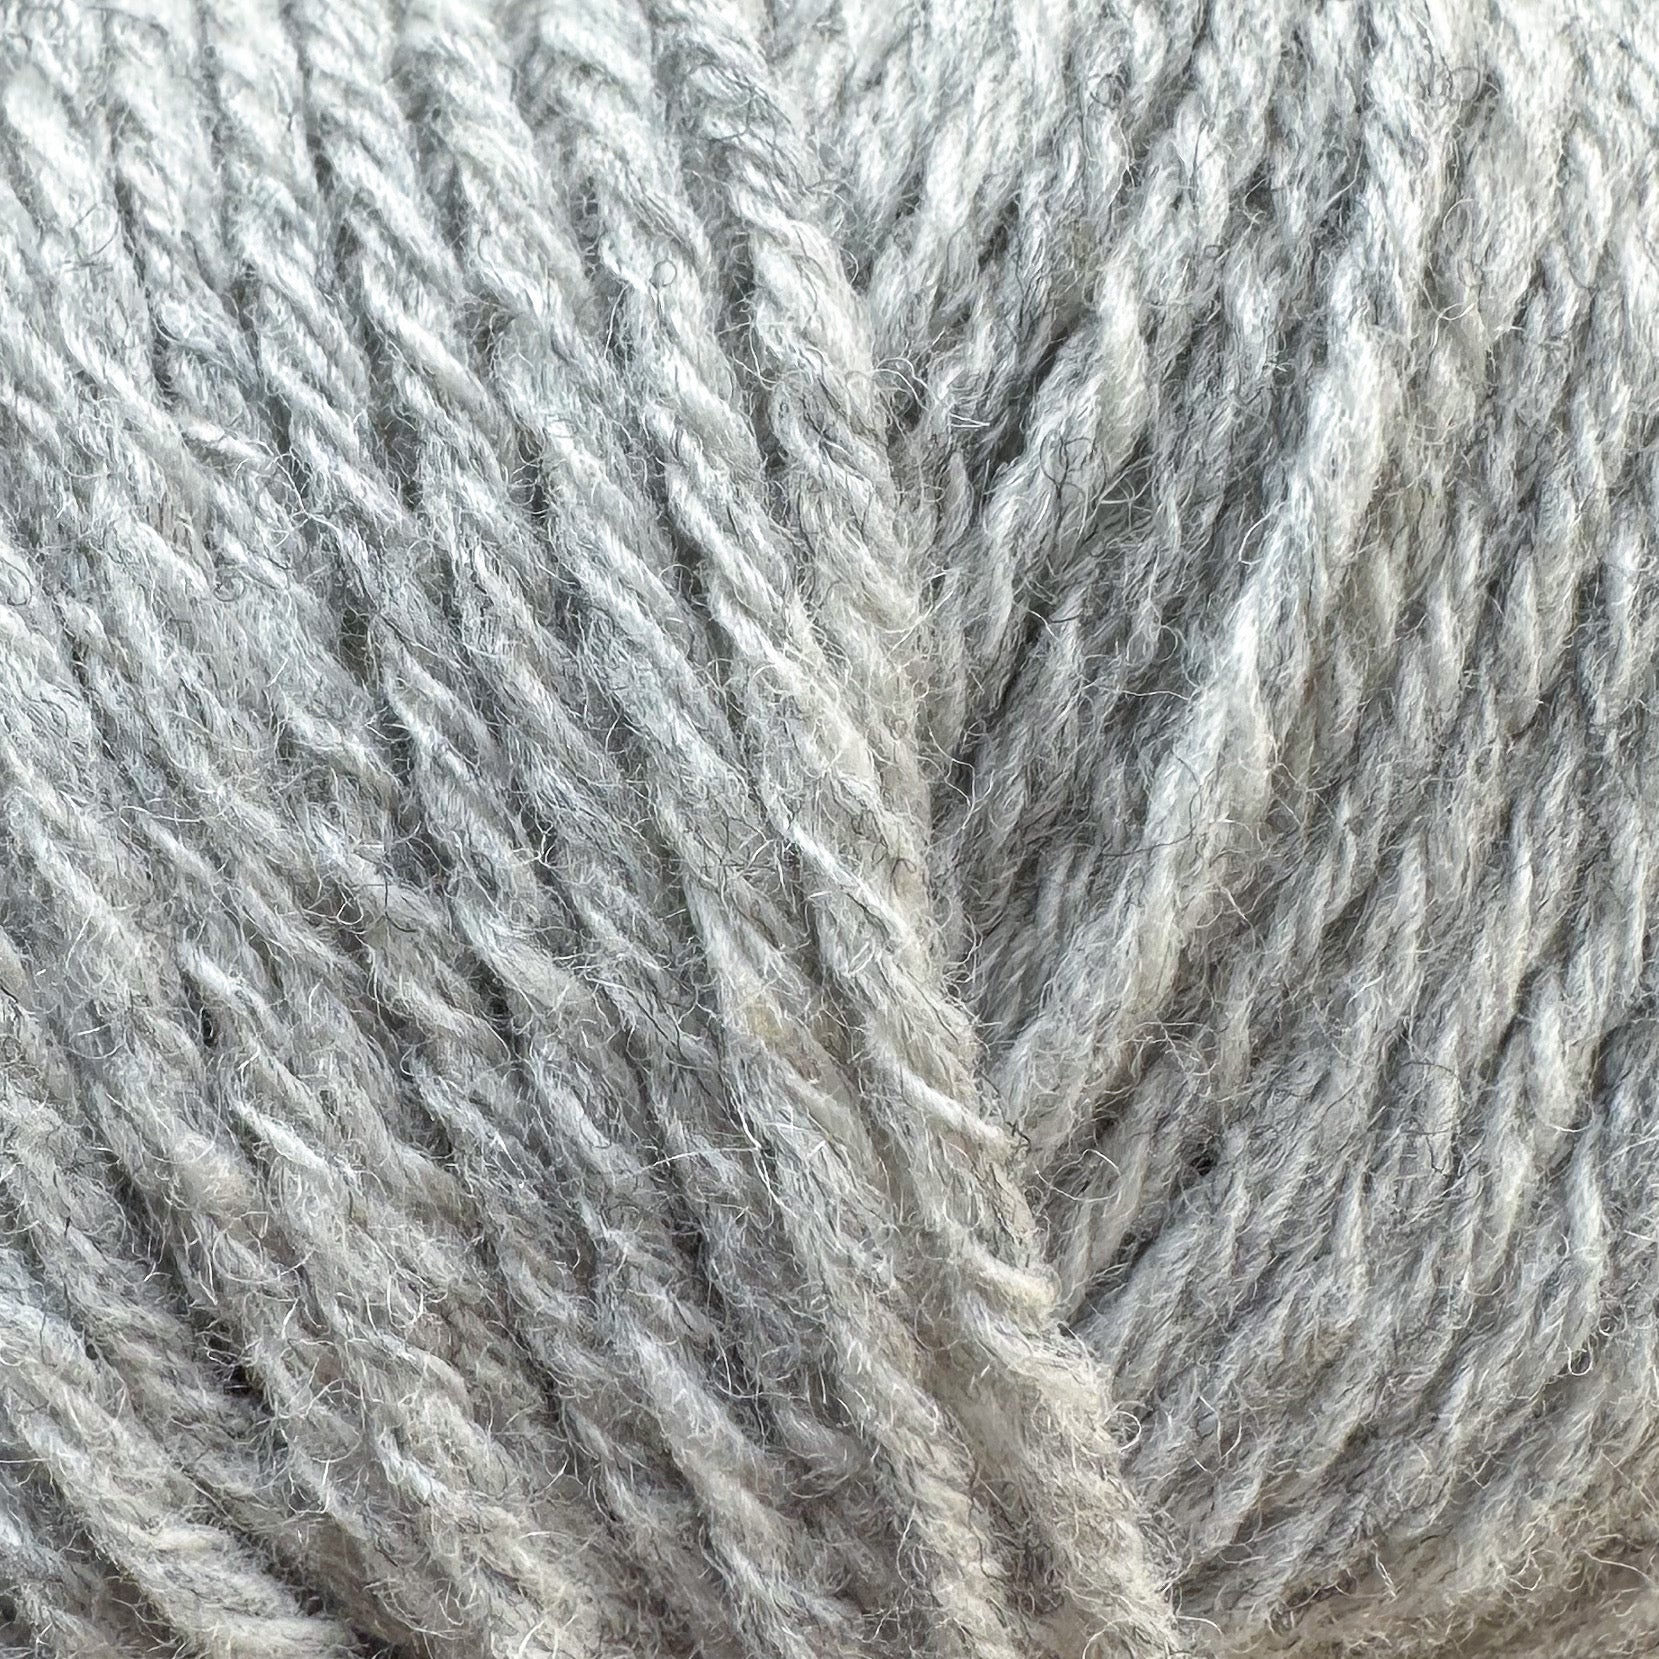 Yarns & Kits – Modern Daily Knitting